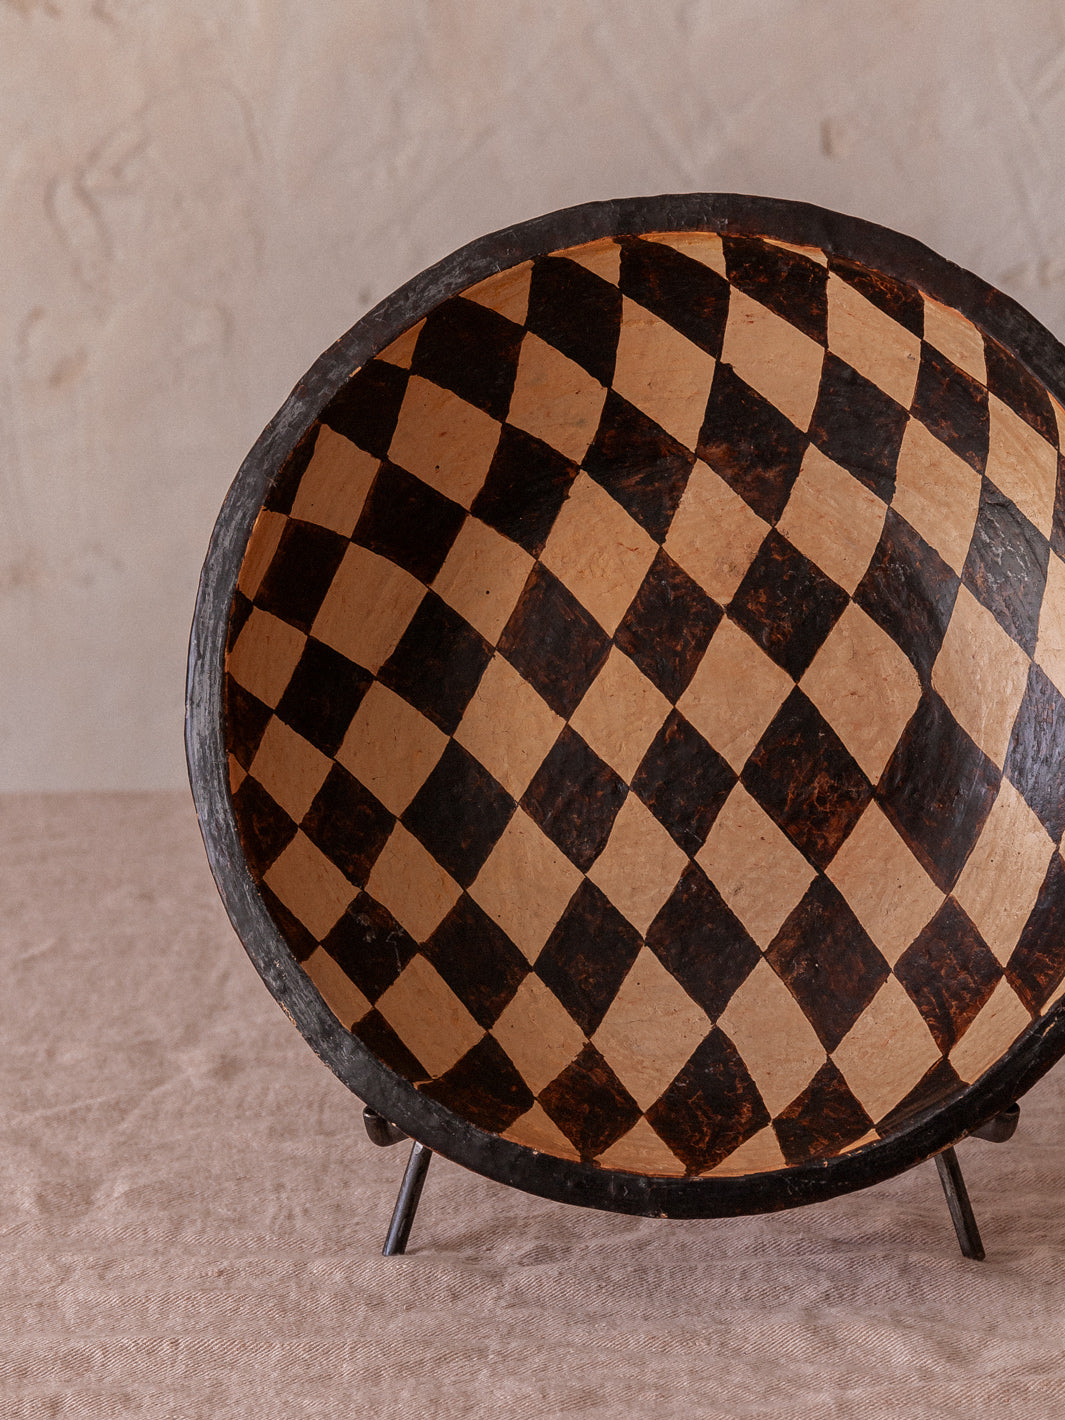 Checkerboard ceramic plate